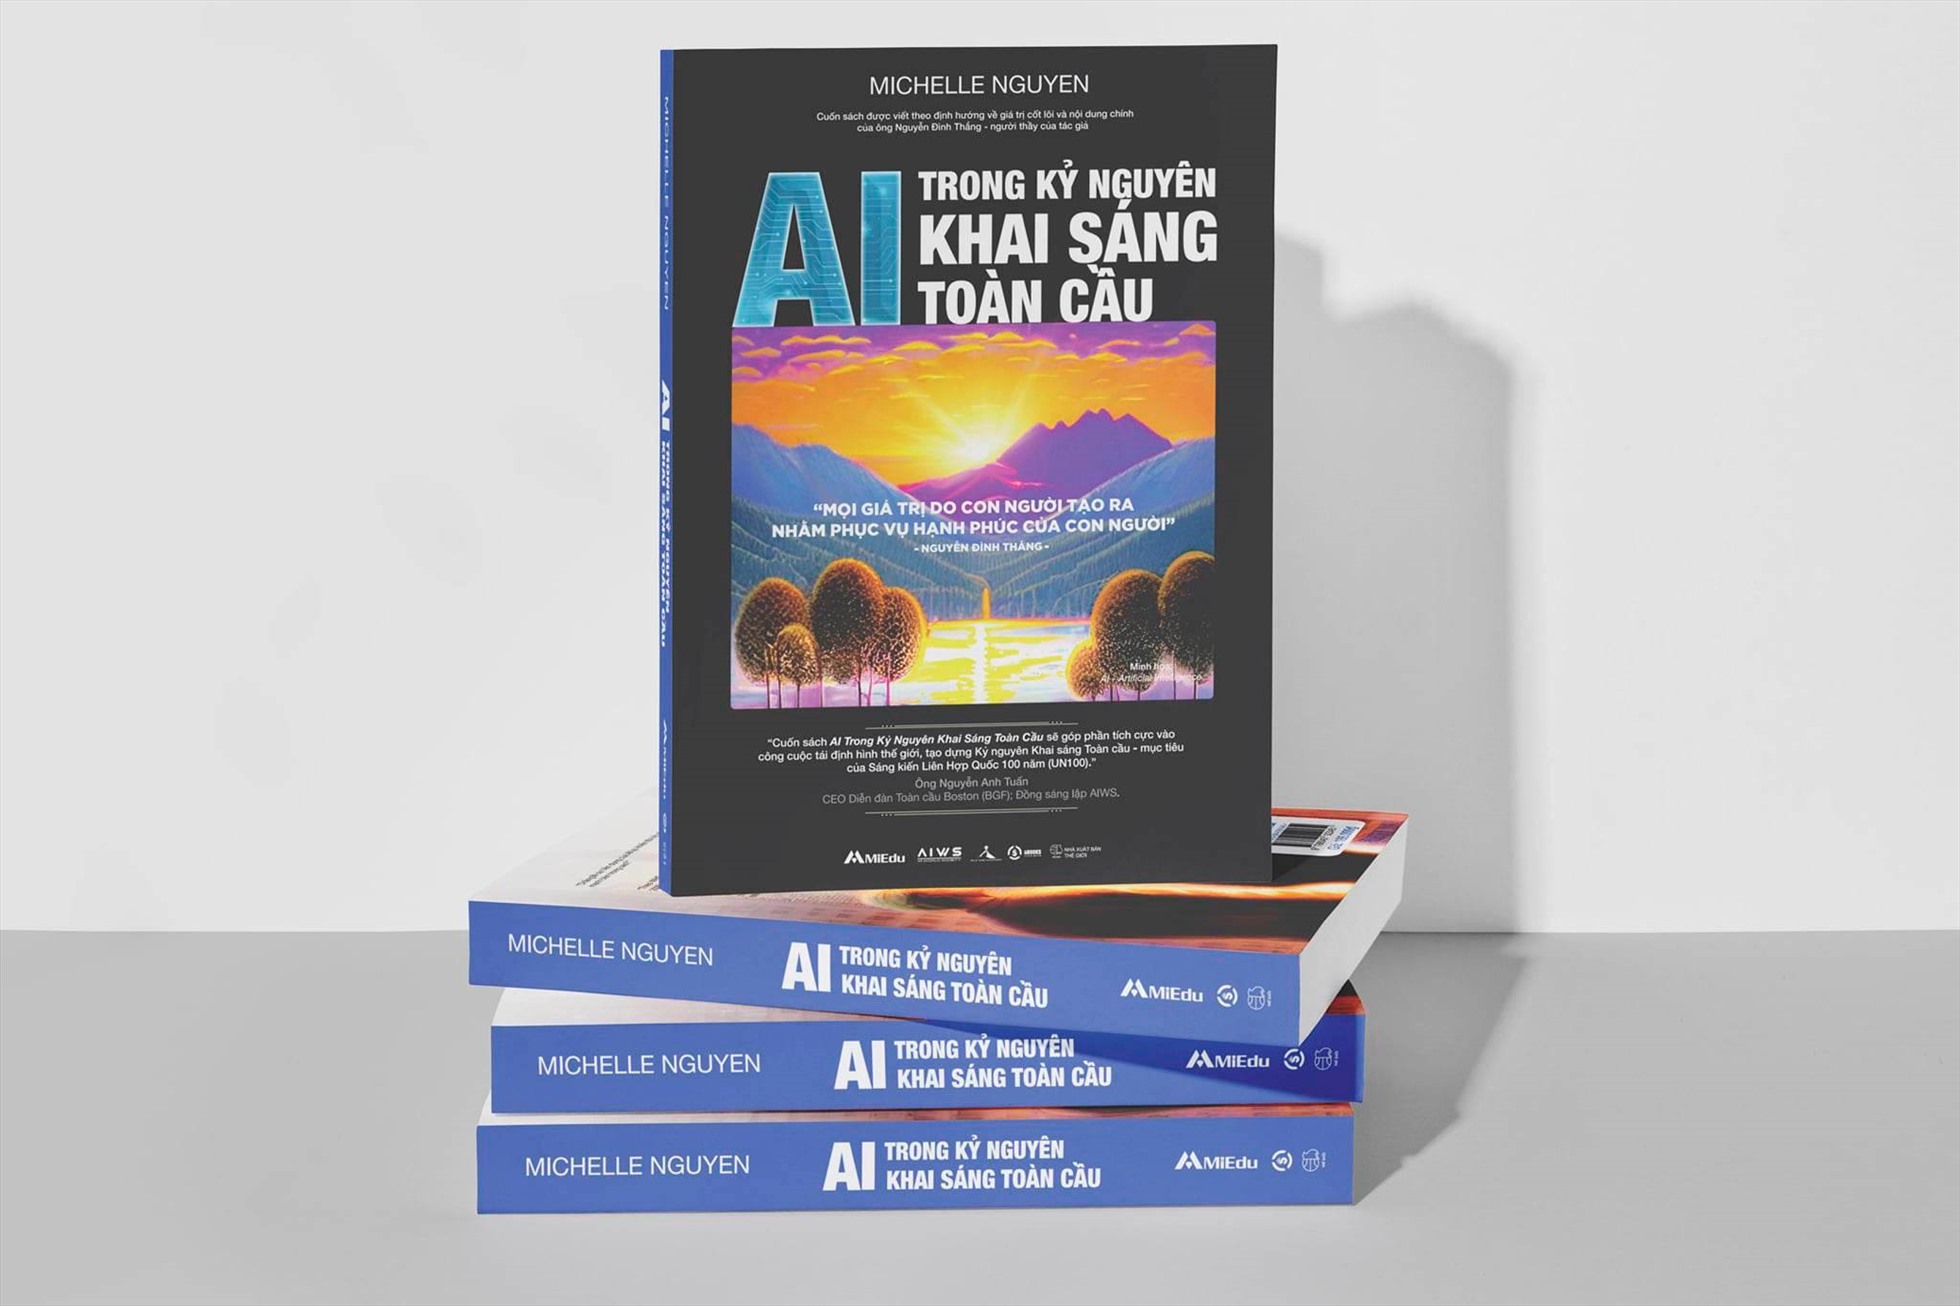 Cuốn sách “AI trong kỷ nguyên khai sáng toàn cầu“. Ảnh: Sbooks